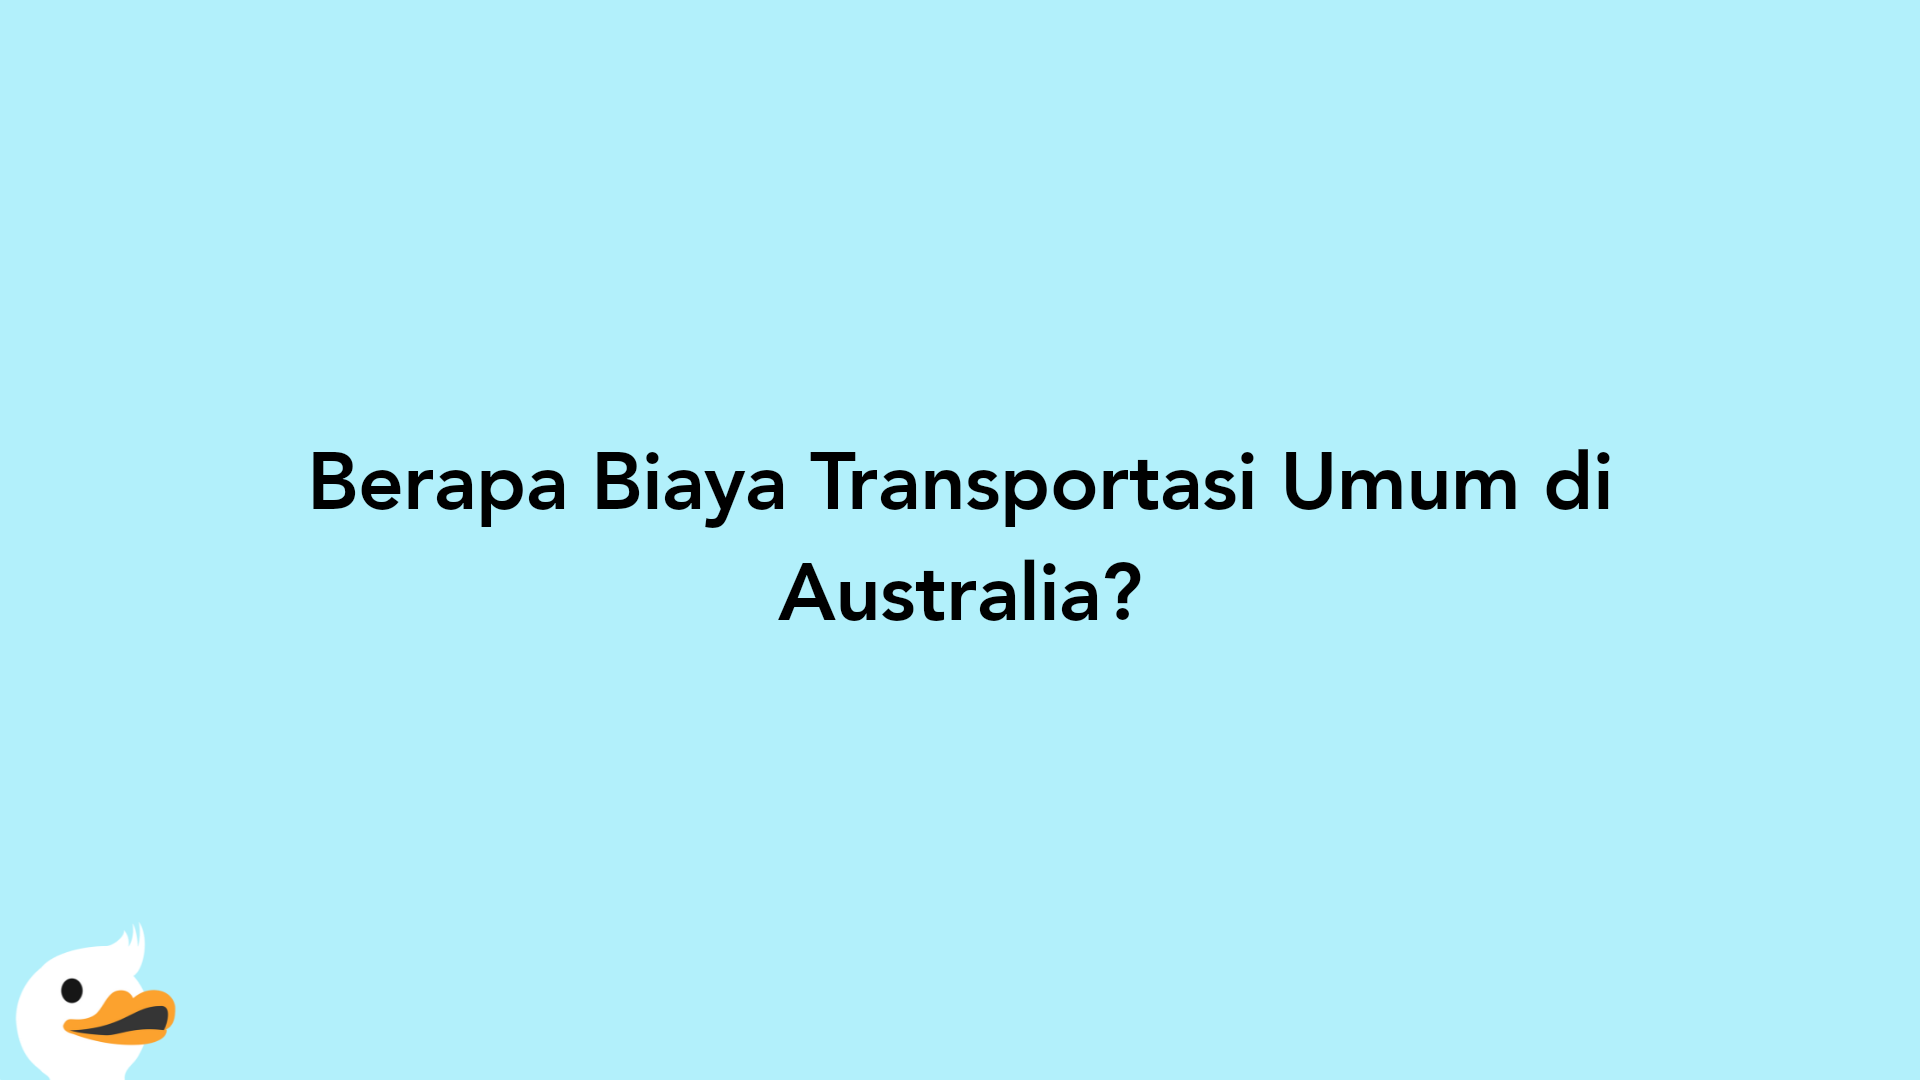 Berapa Biaya Transportasi Umum di Australia?